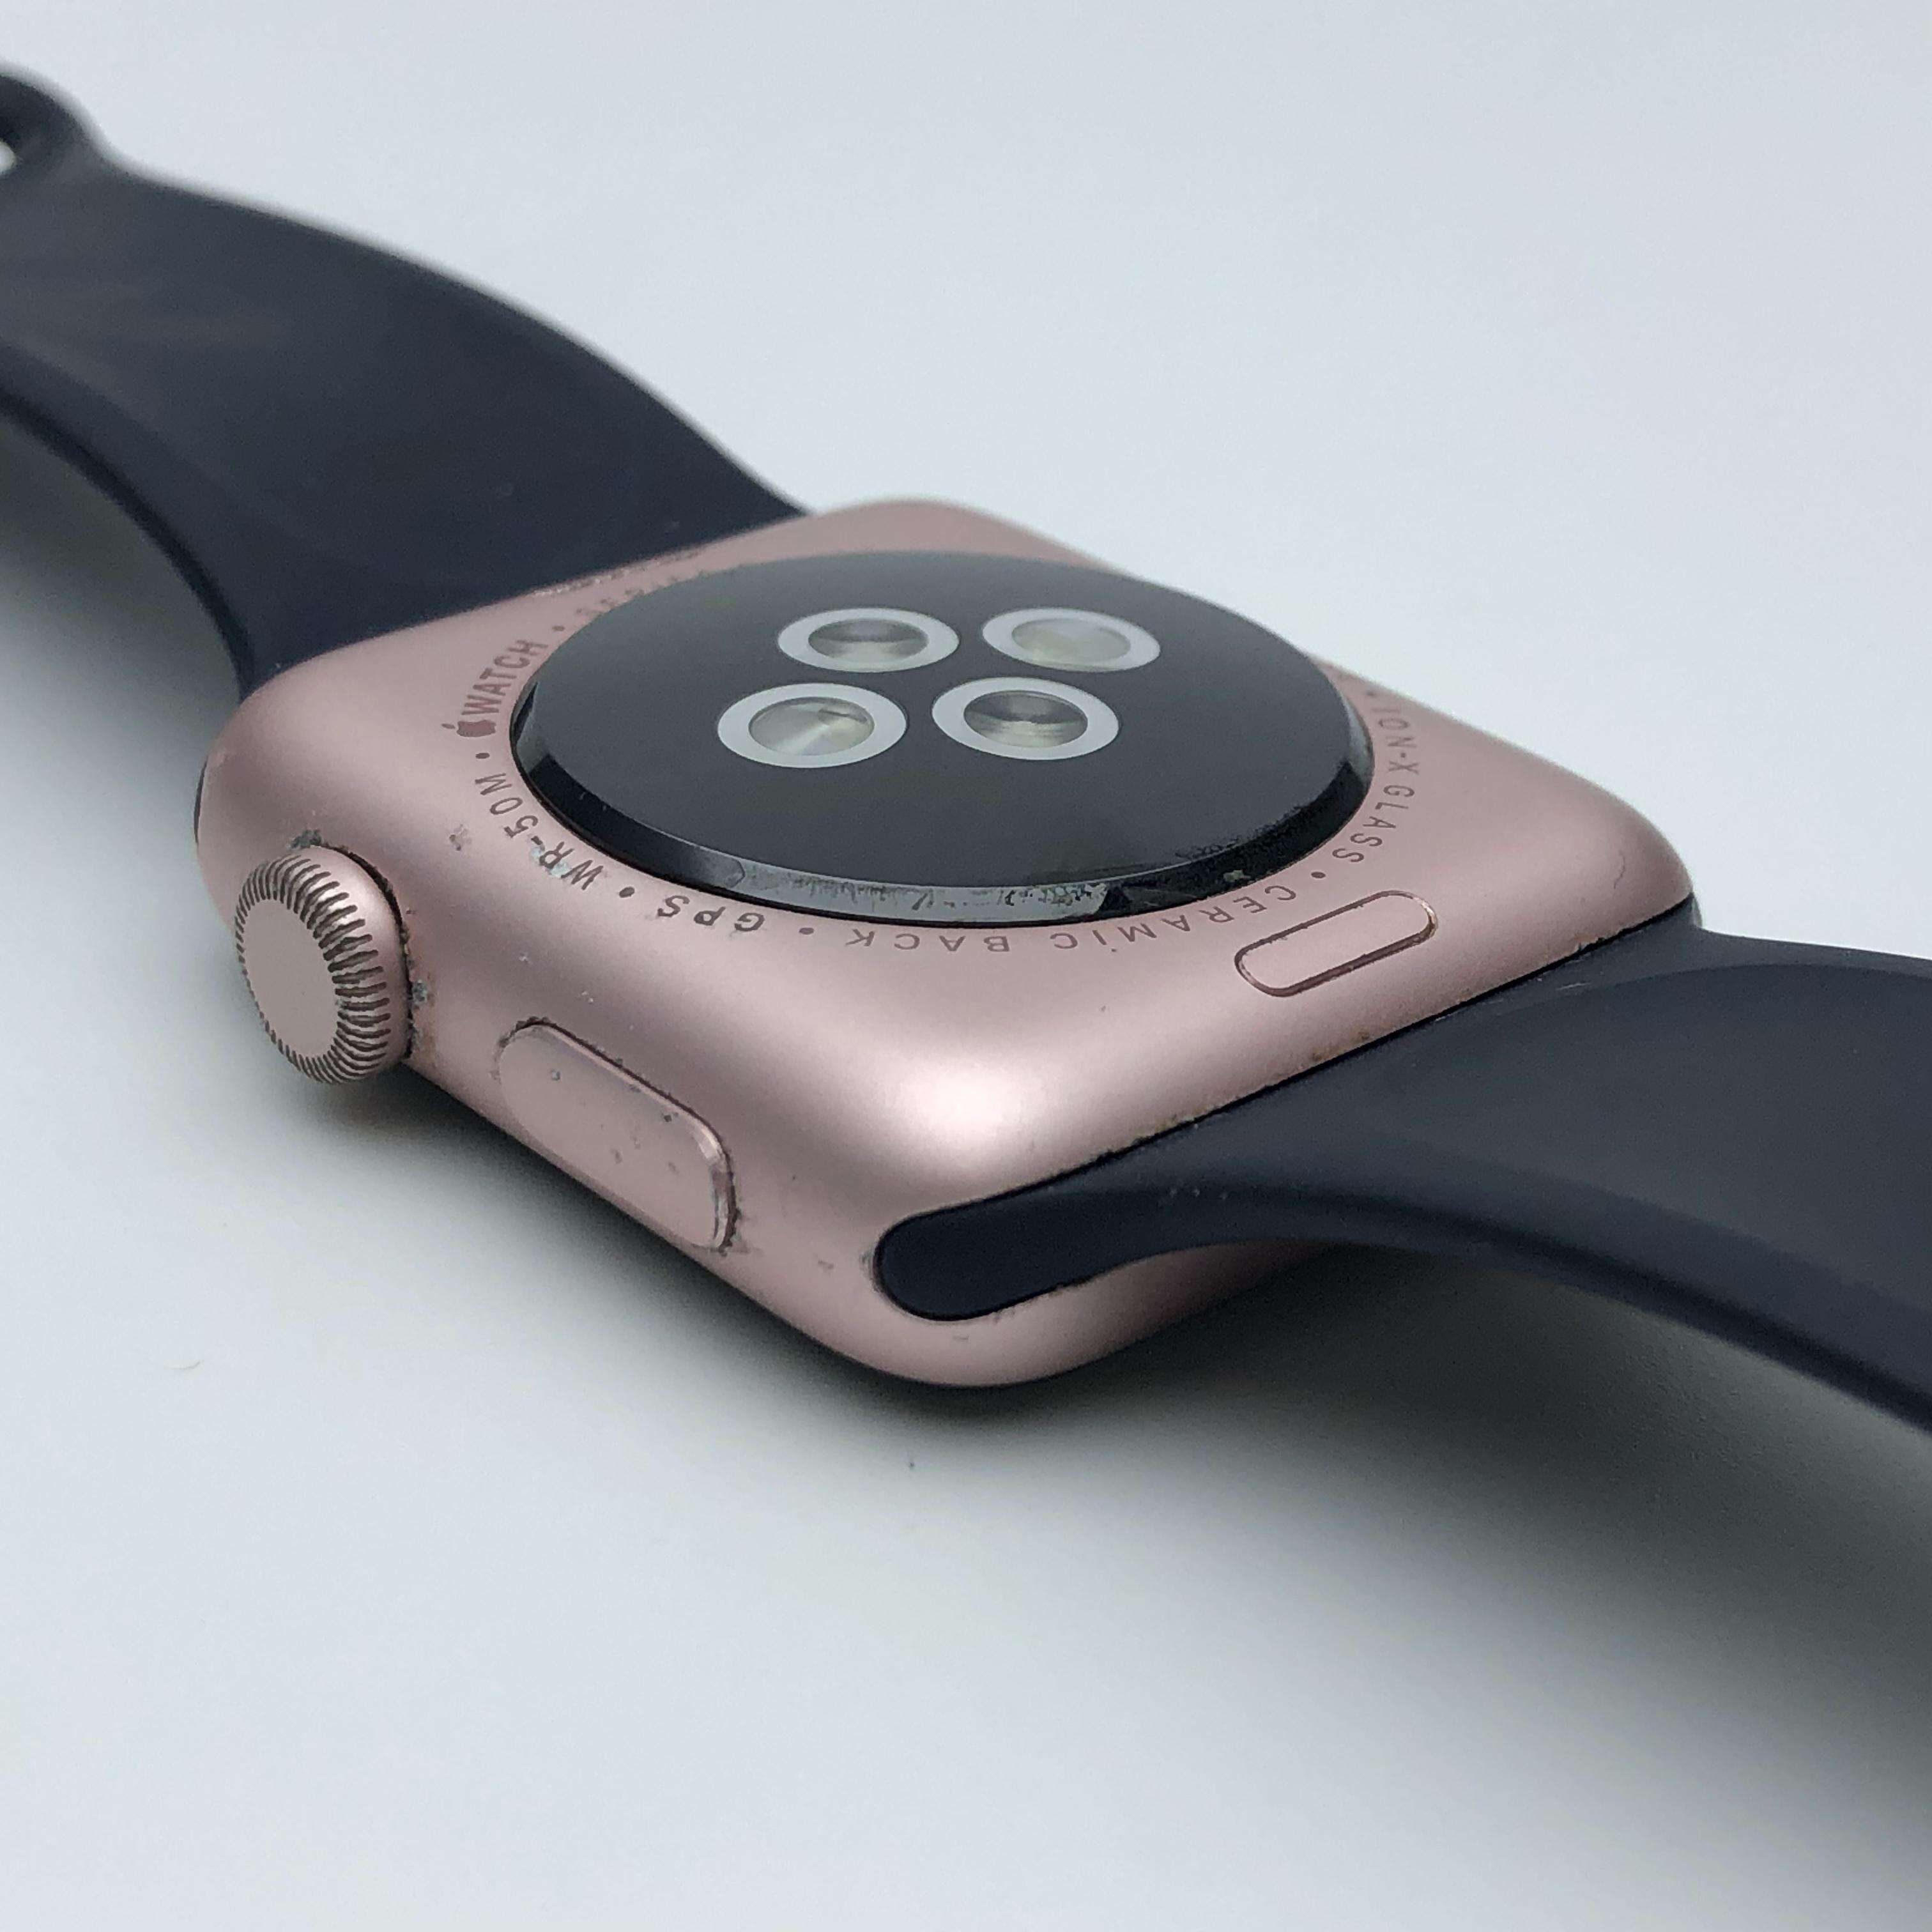 Apple Watch Series 2铝金属表壳 42MM 港版GPS版